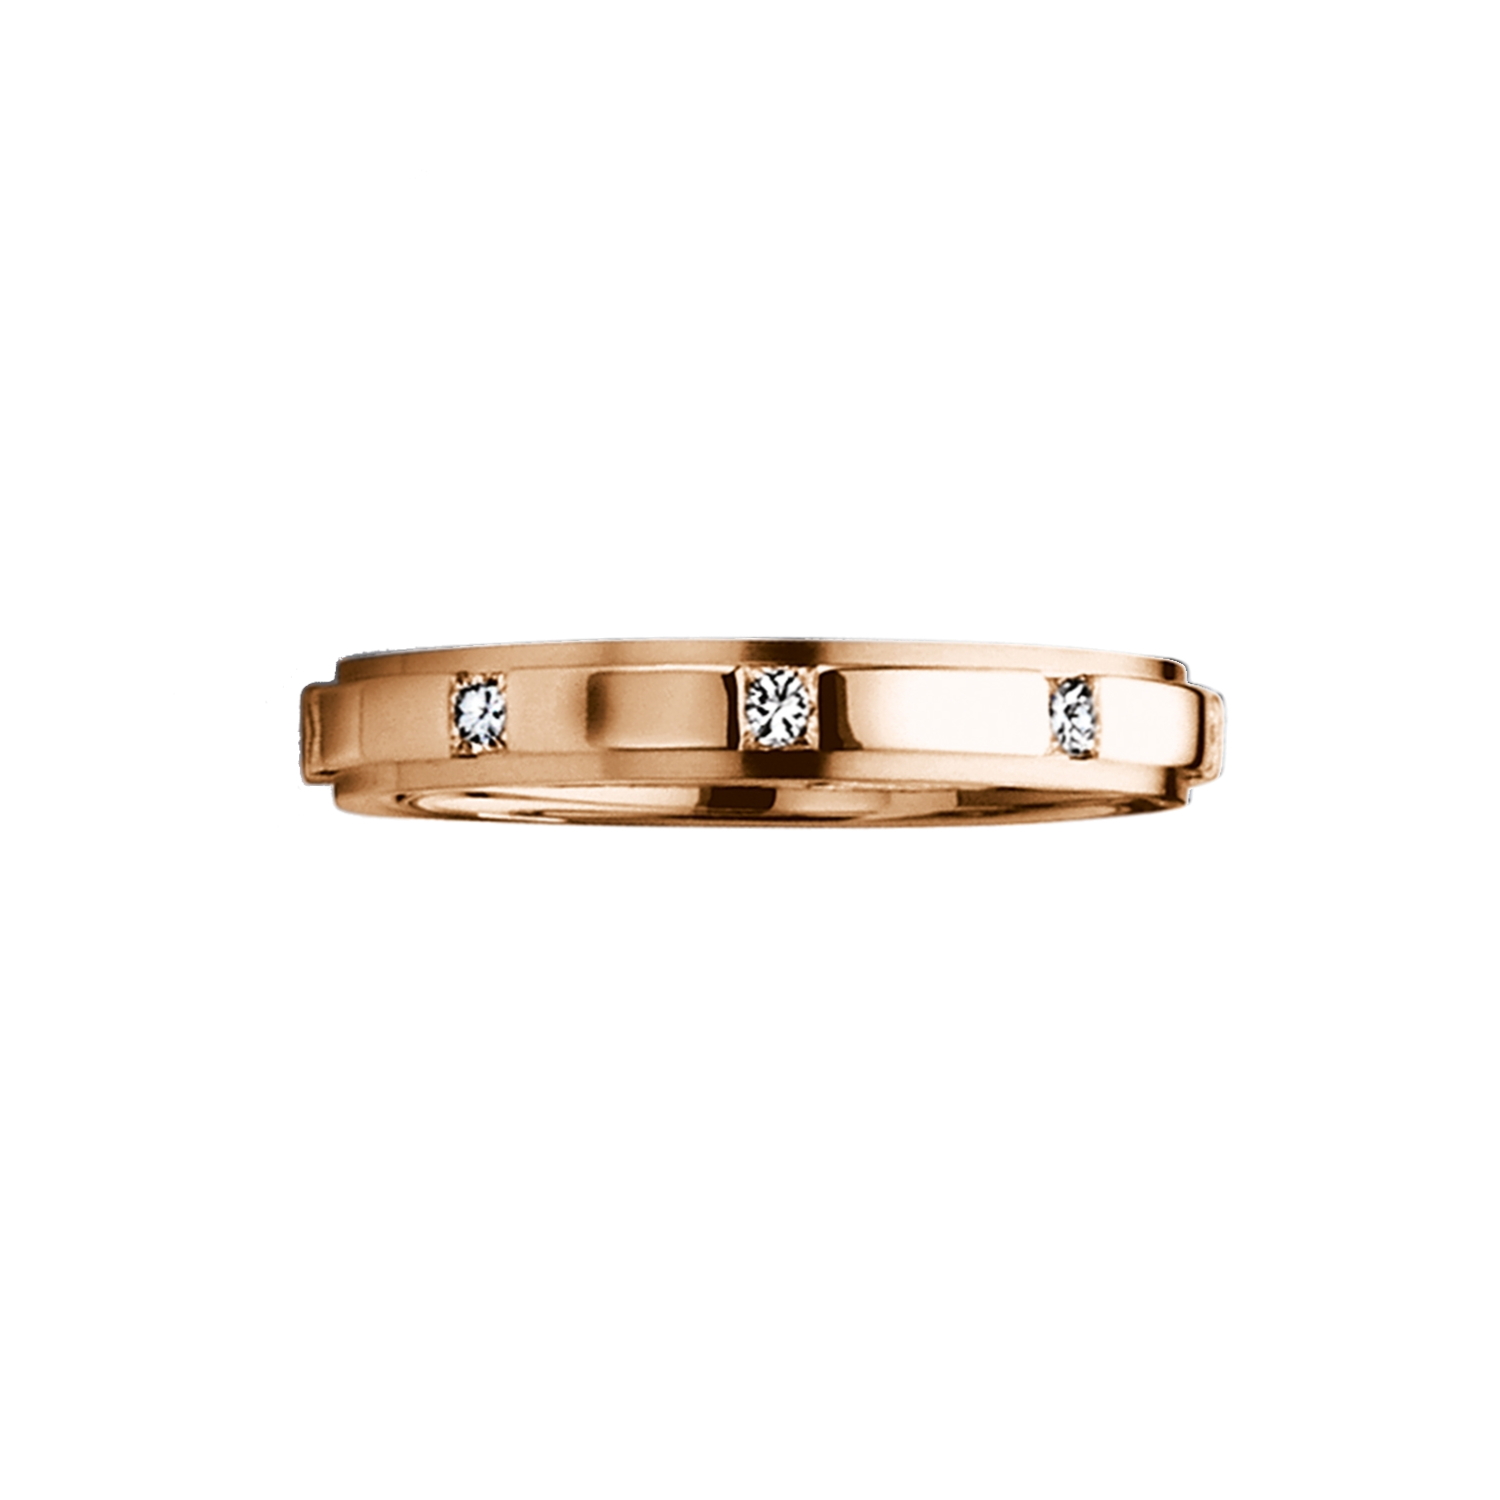  FURRER JACOT, Wedding rings, SKU: 71-83110-0-0/030-73-0-55-3 | watchphilosophy.co.uk